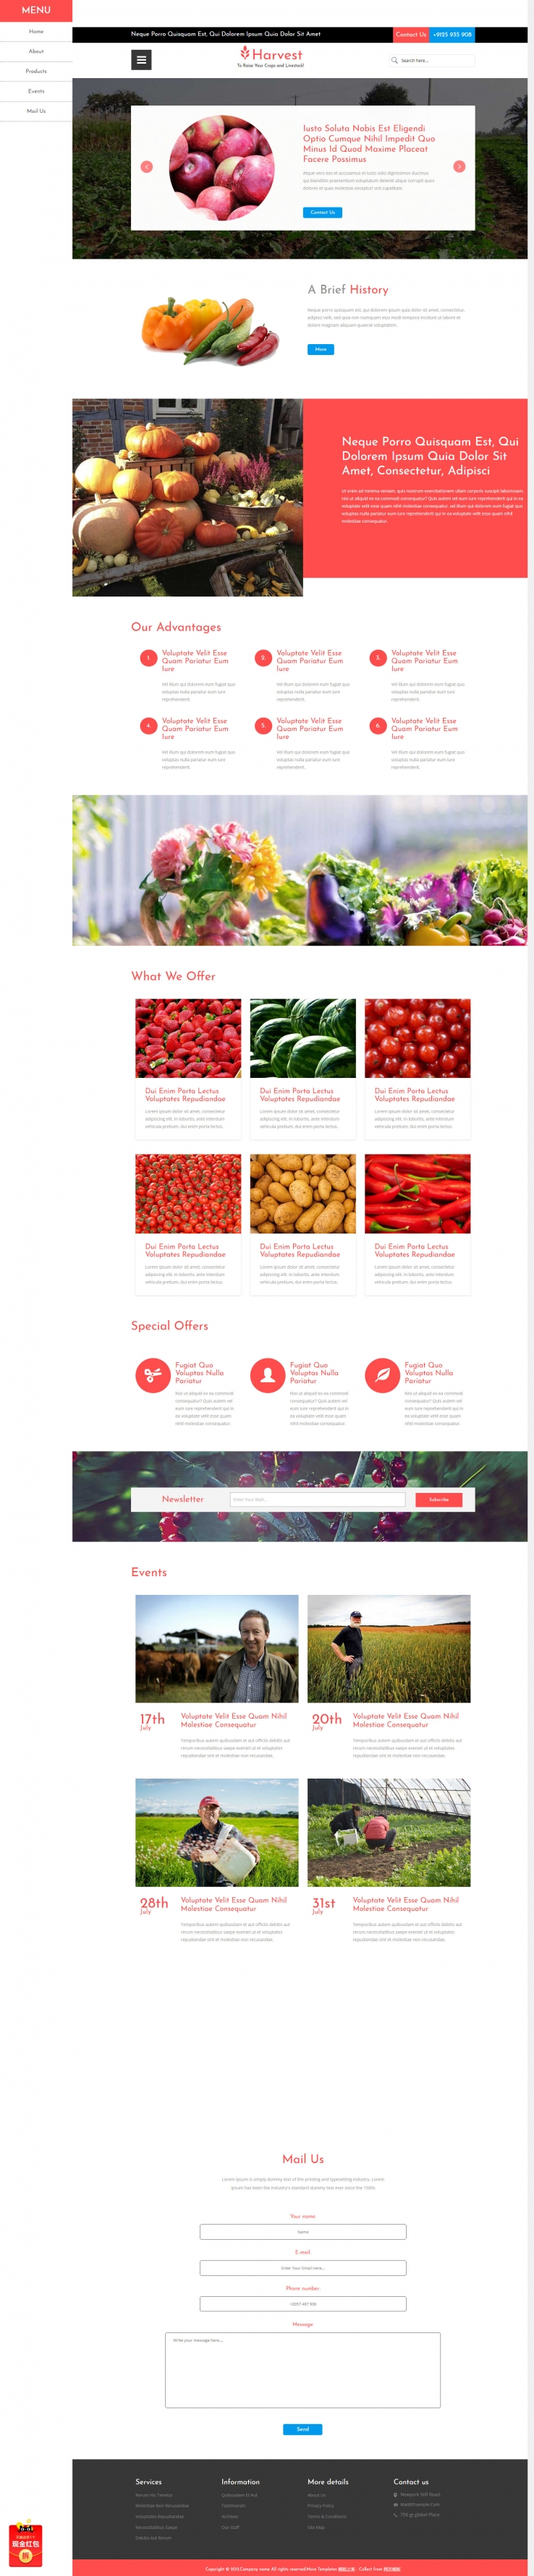 精致简洁风的蔬菜生鲜超市配送企业官网模板下载